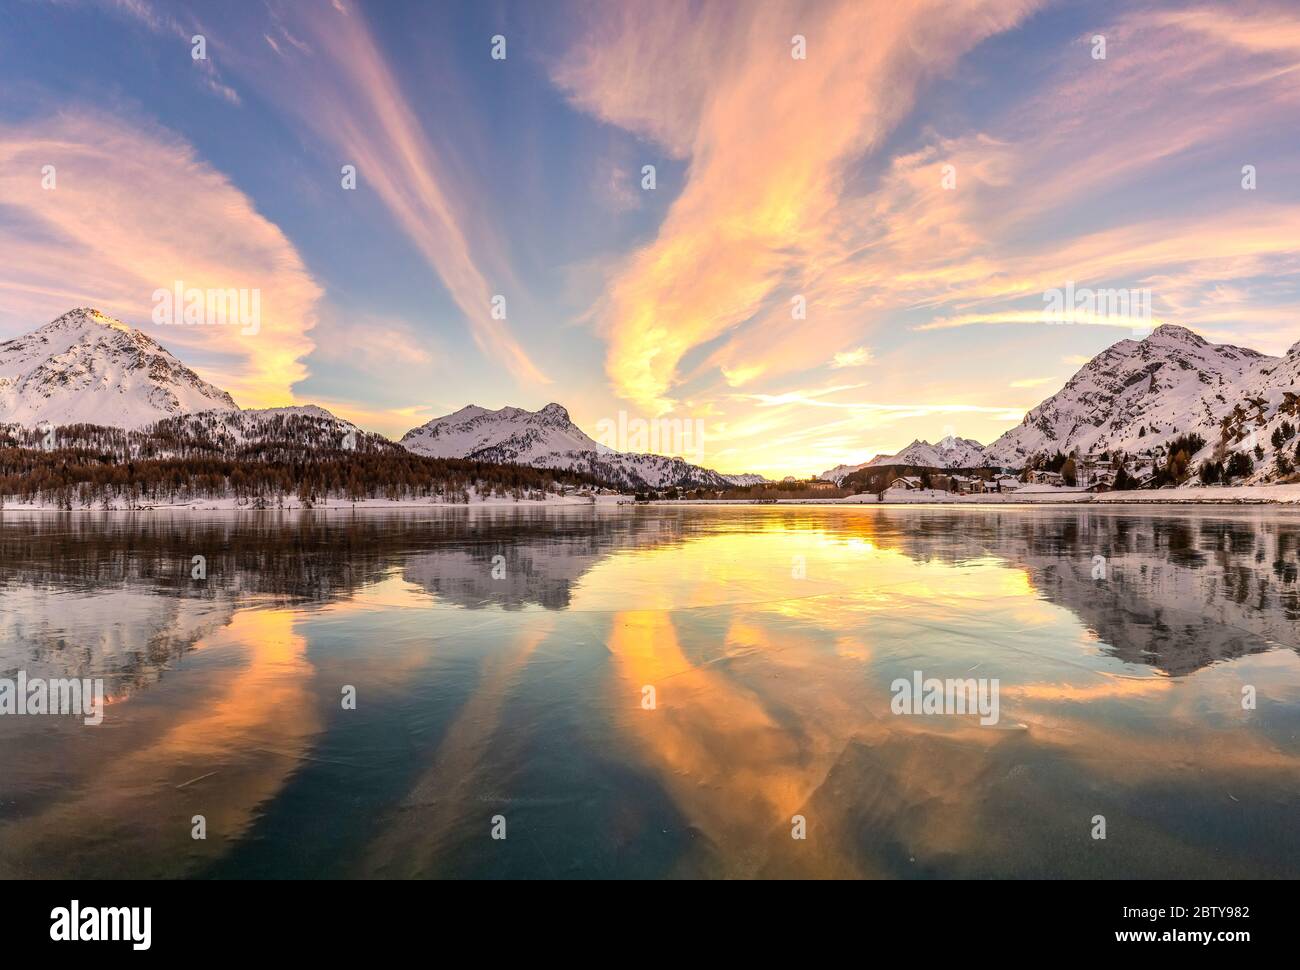 Farben des Sonnenuntergangs spiegeln sich auf der eisigen Oberfläche des Sils-Sees, Engadiner Tal, Graubünden, Schweiz, Europa Stockfoto